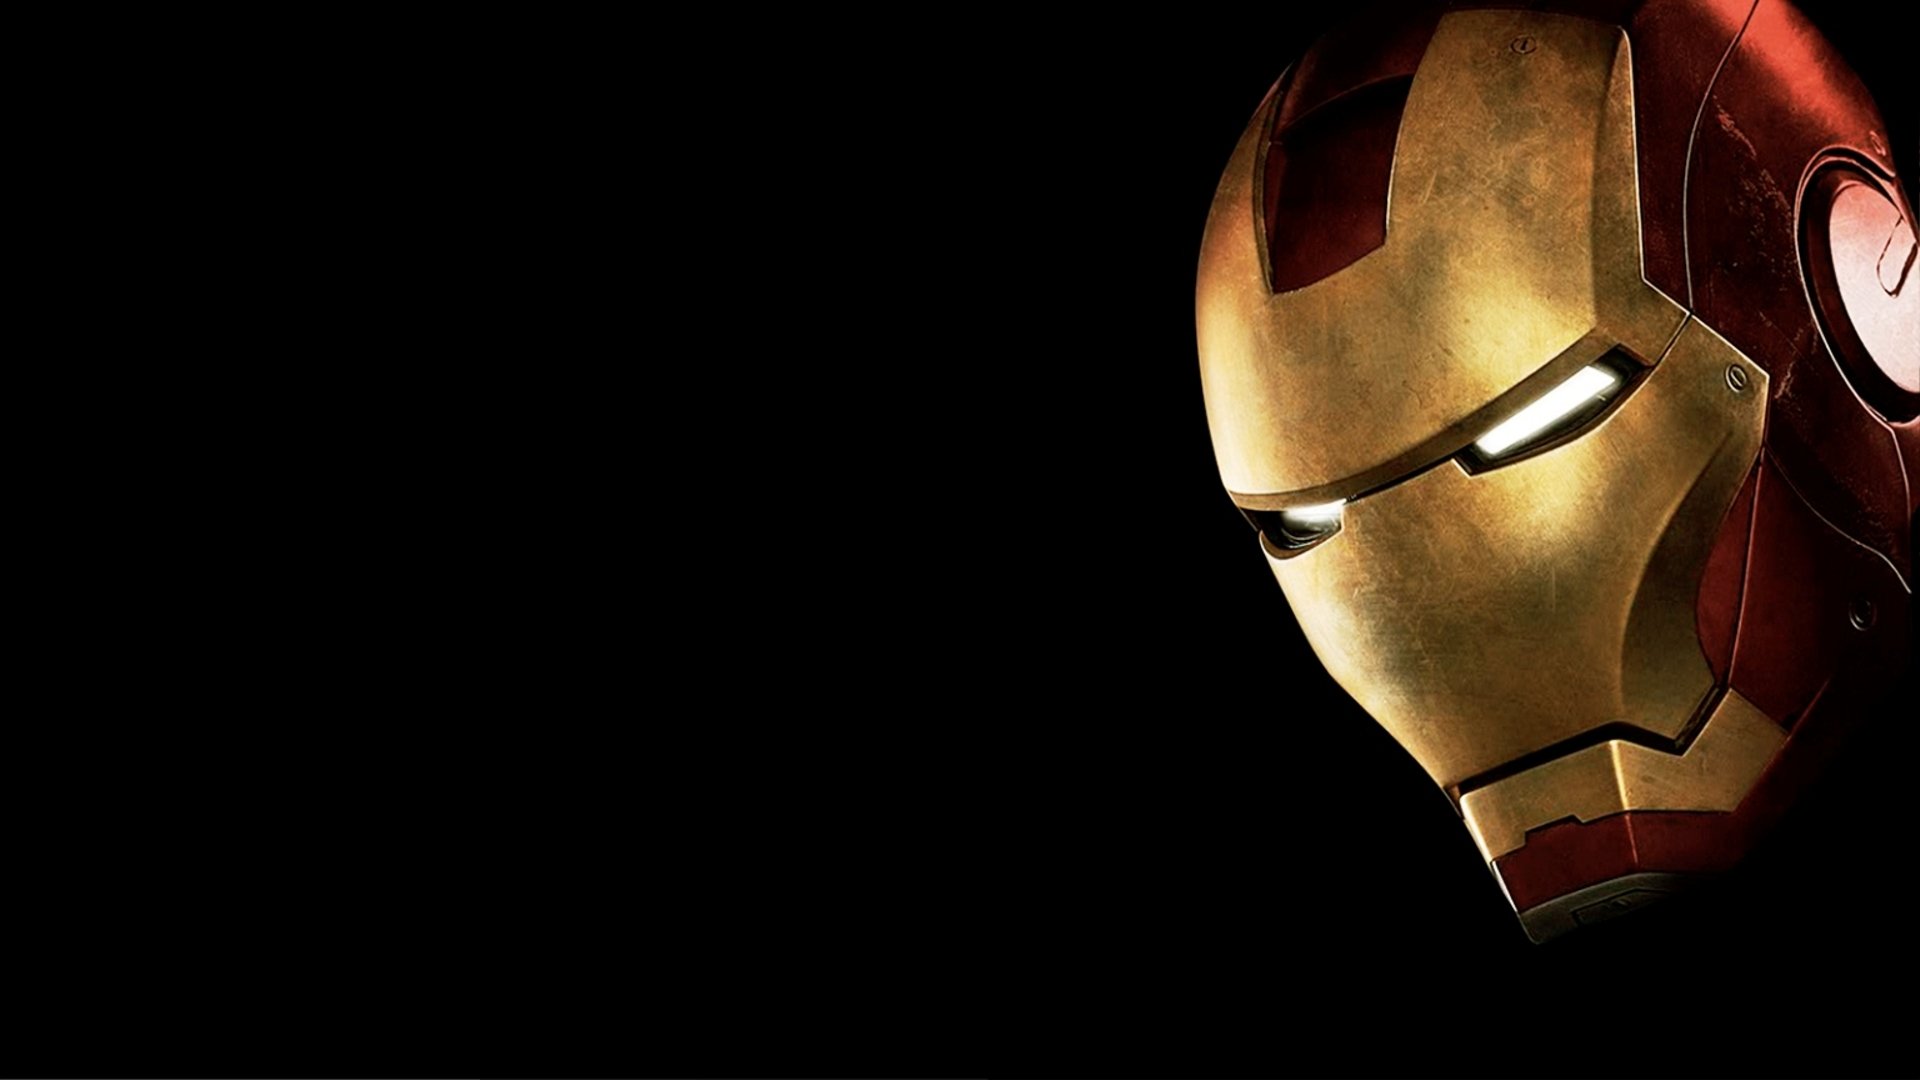 Hình nền Iron Man: Không có người hâm mộ Marvel nào bỏ qua được hình nền Iron Man đúng không? Với thiết kế điện tử hiện đại và thật tinh tế, hình nền Iron Man sẽ khiến cho chiếc laptop của bạn trở nên độc đáo và không kém phần sang trọng. Thử ngay nào!